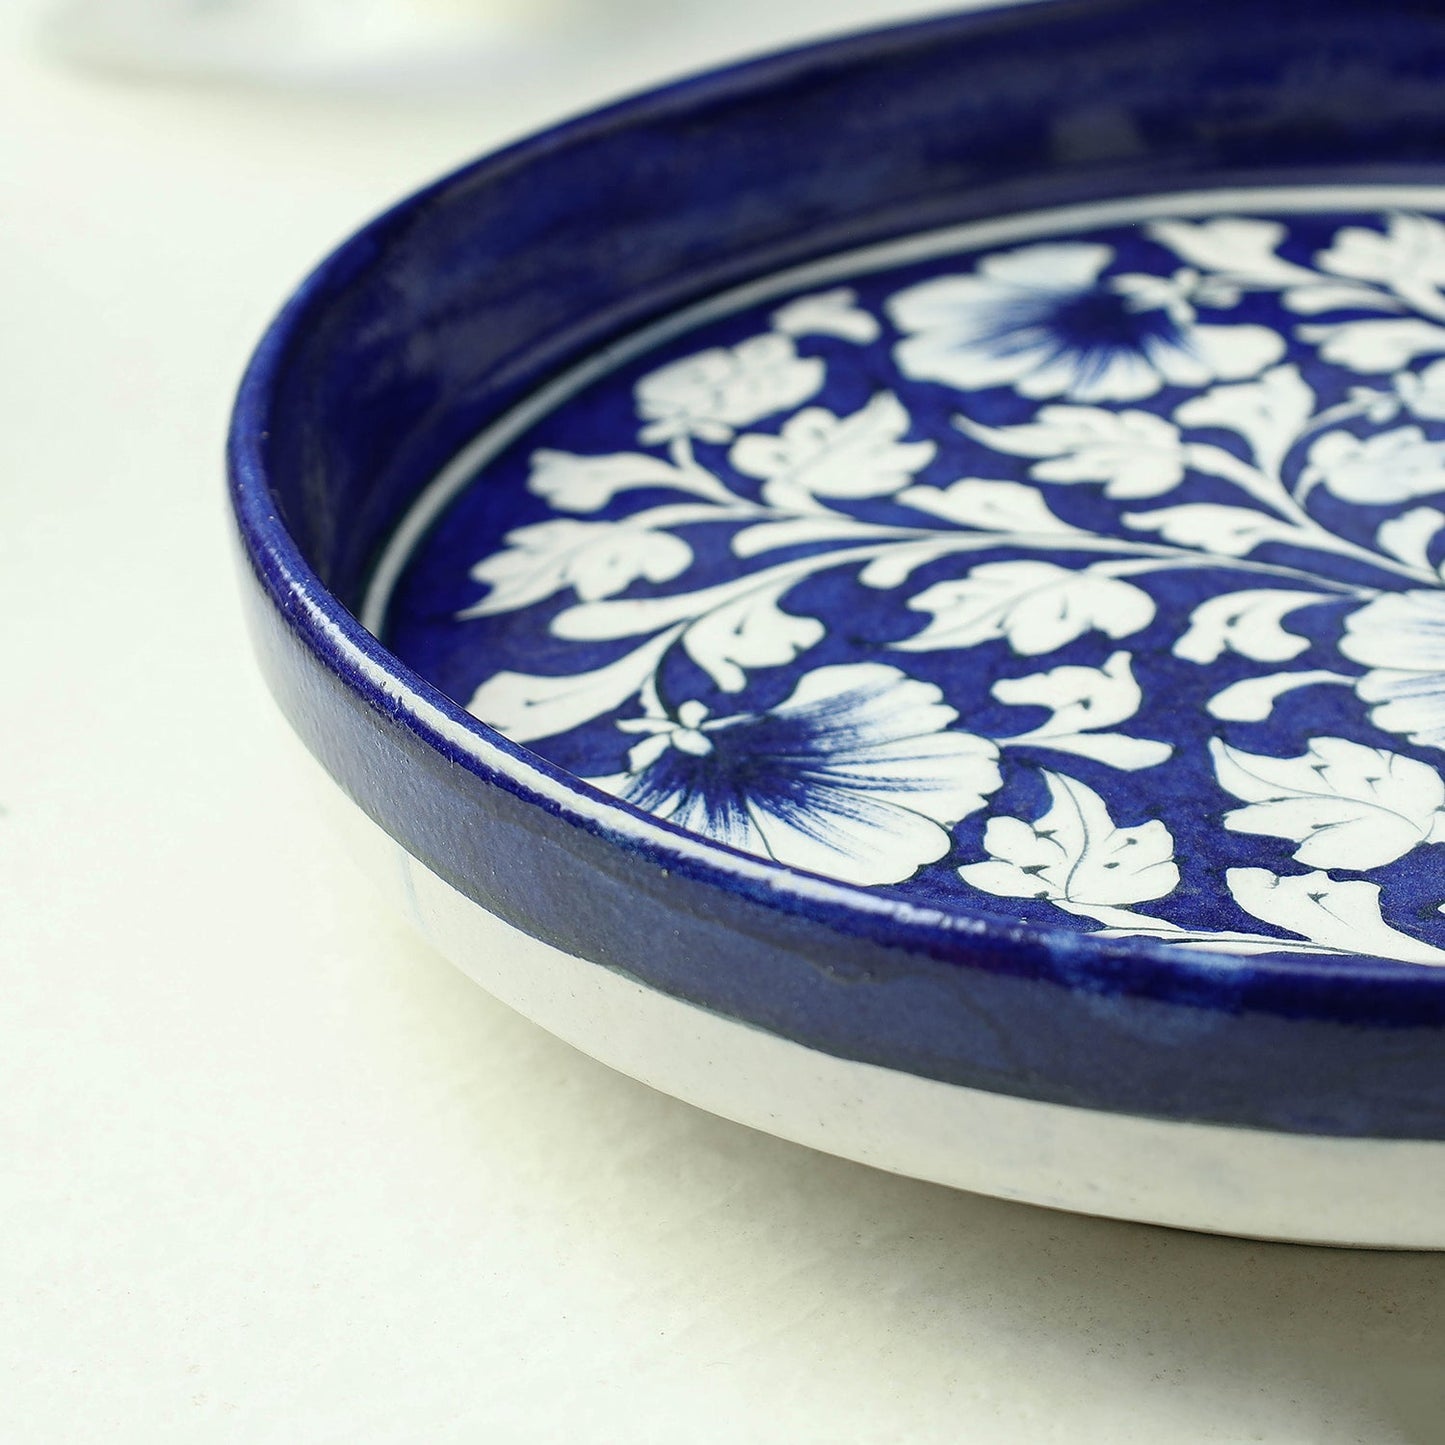 Original Blue Pottery Ceramic Serving Plate (9 x 9 in)